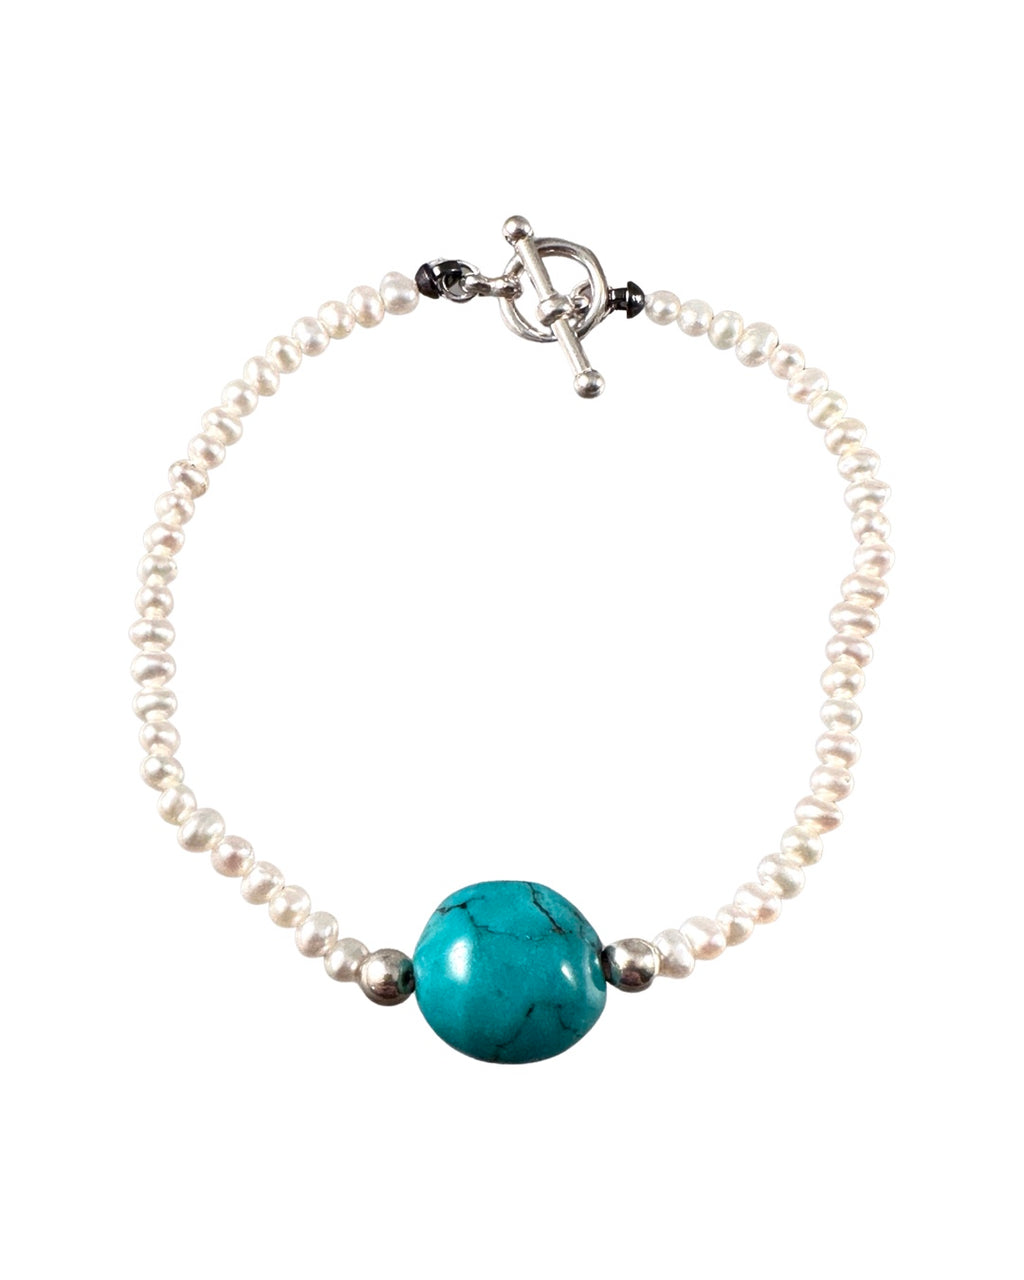 Freshwater Pearl & Turquoise Toggle Bracelet